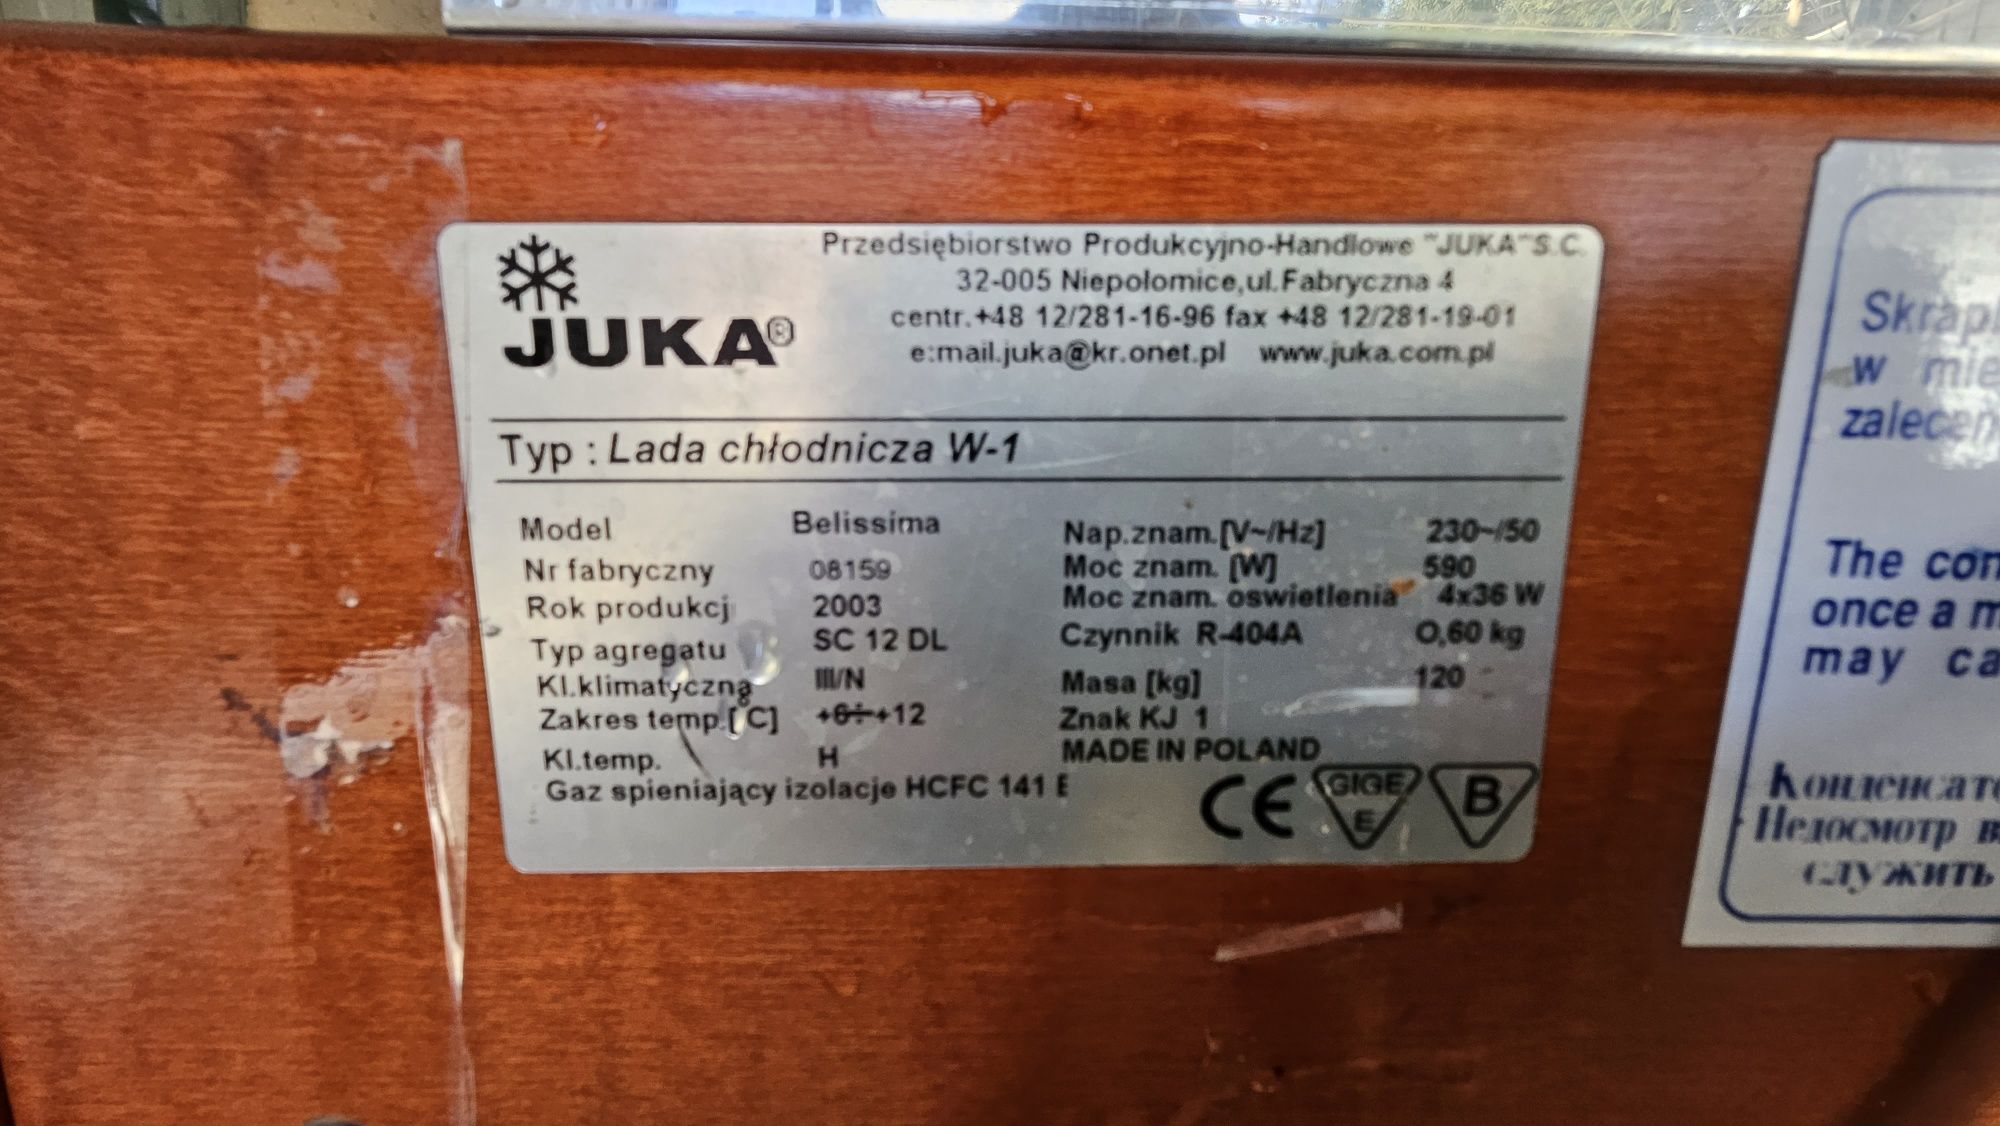 Lada witryna chłodnicza cukiernicza W-1 JUKA